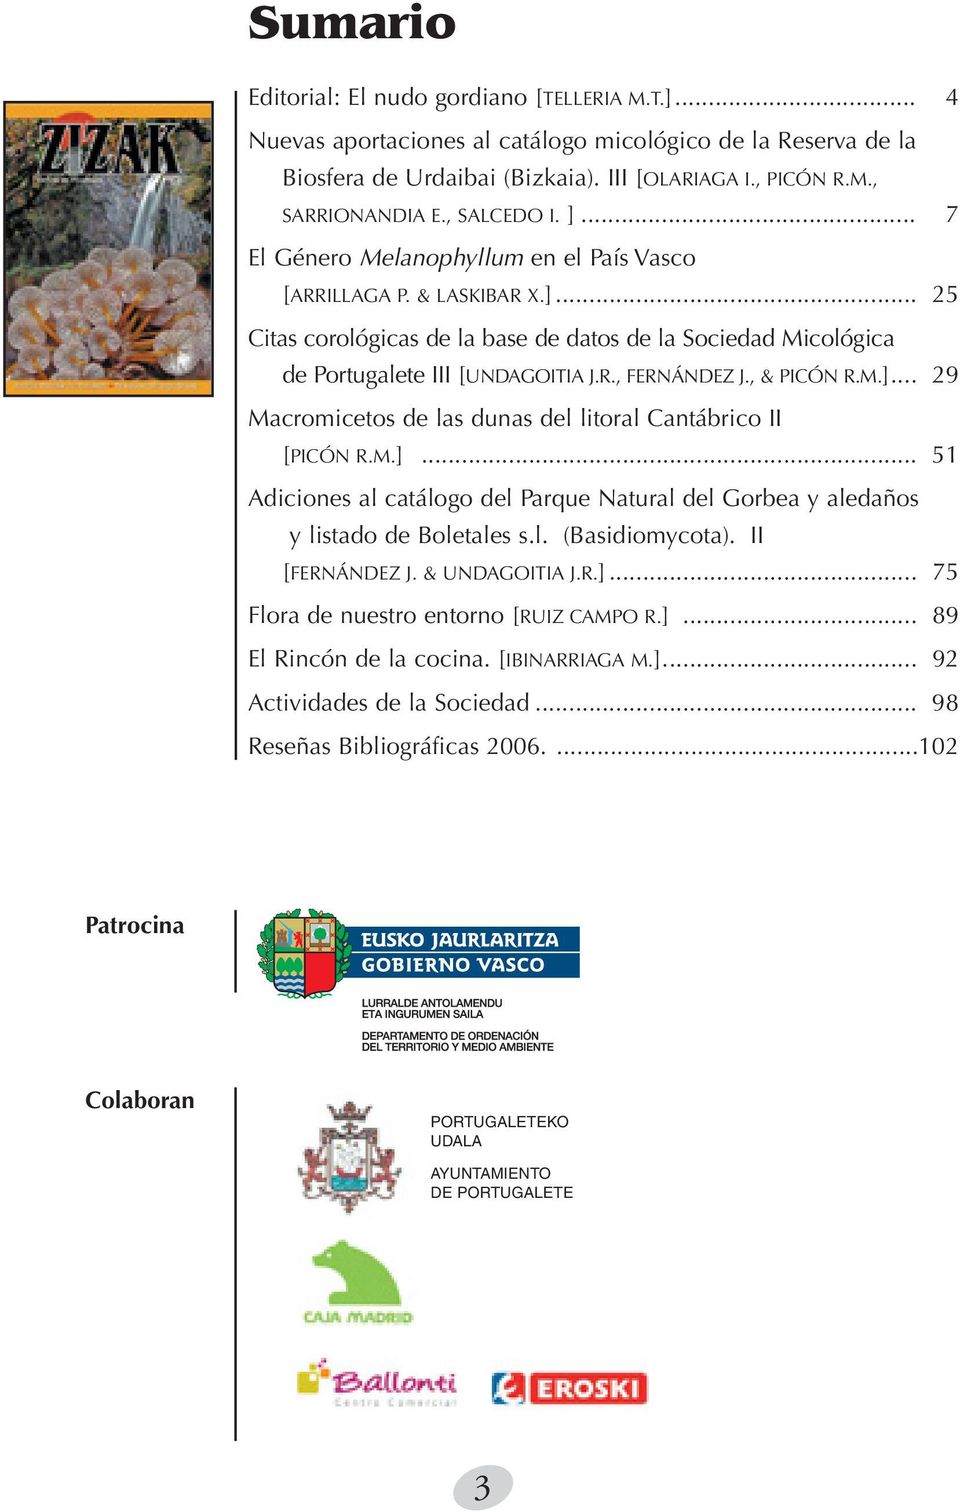 , & PICÓN R.M.]... 29 Macromicetos de las dunas del litoral Cantábrico II [PICÓN R.M.]... 51 Adiciones al catálogo del Parque Natural del Gorbea y aledaños y listado de Boletales s.l. (Basidiomycota).